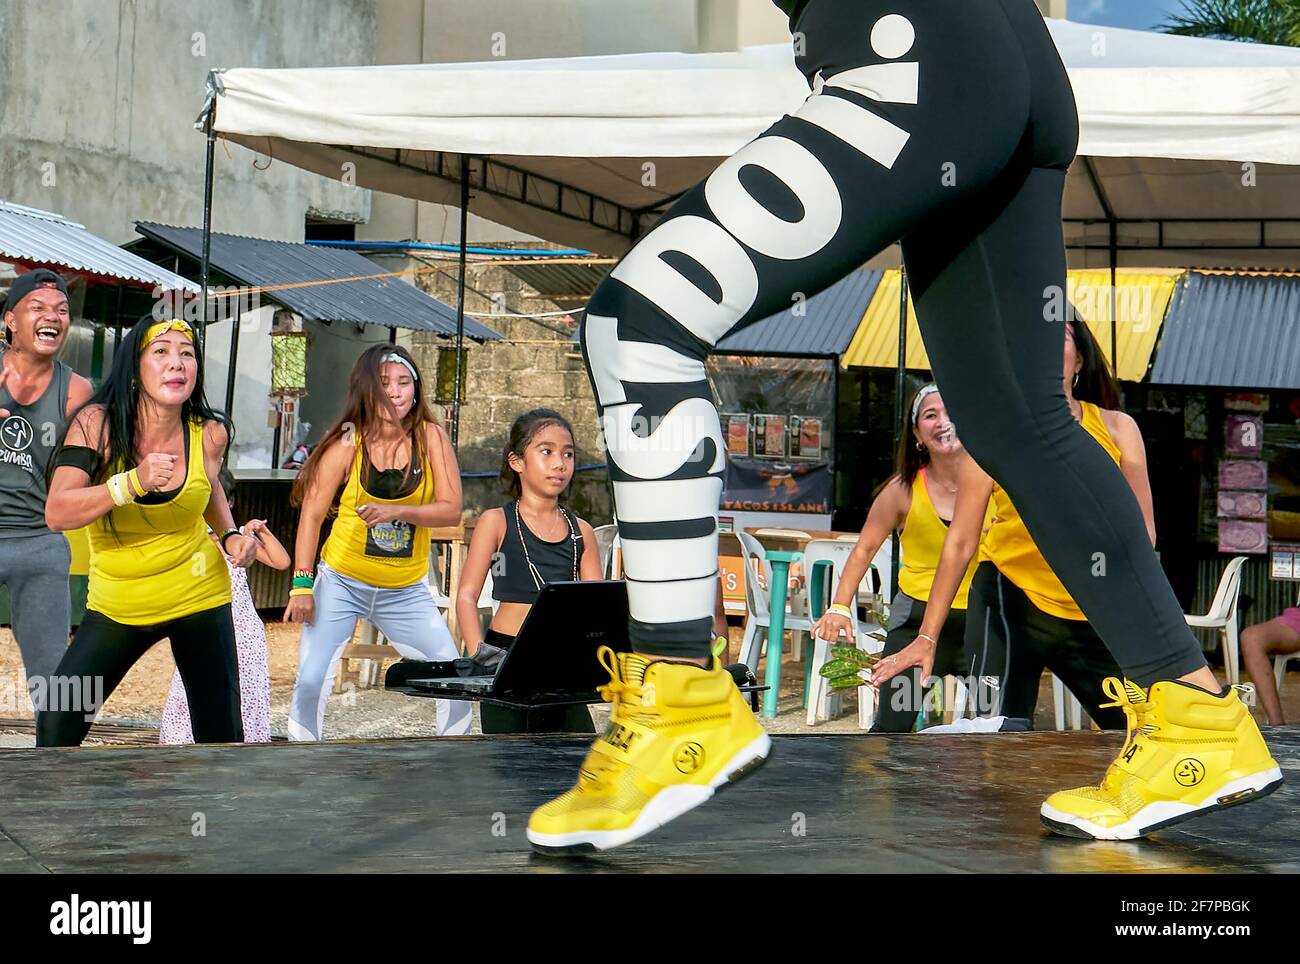 Eine Gruppe von Zumba-Tänzern, alle in gelber Sportkleidung gekleidet, trainiert fröhlich vor einer weiblichen Instruktorin auf einer Bühne auf der Insel Boracay, Asien Stockfoto